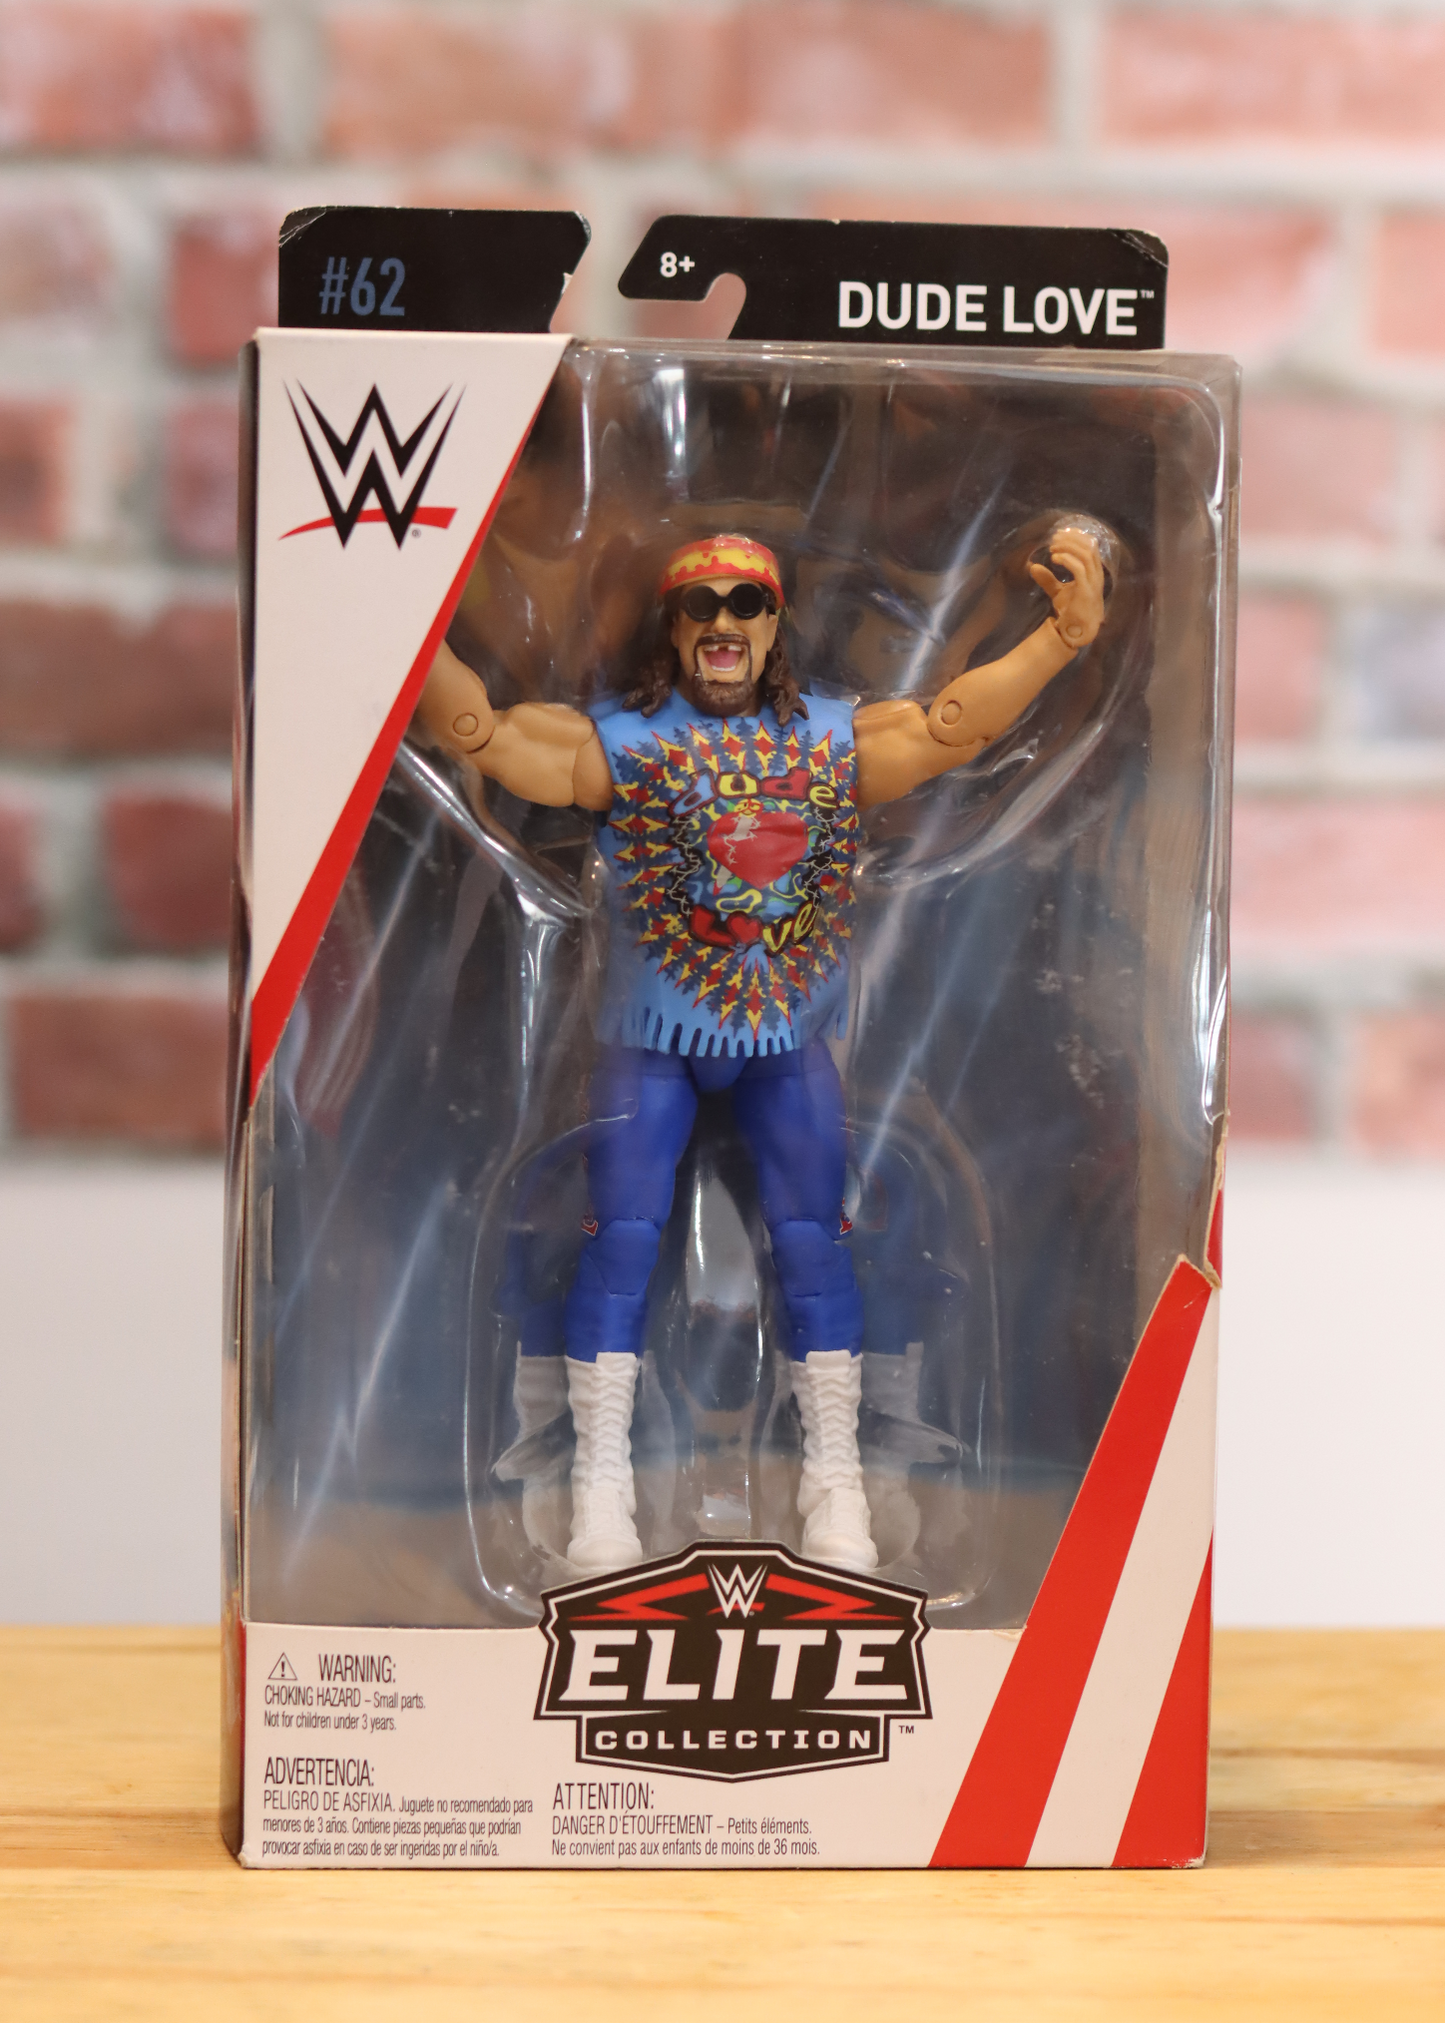 2018 Mattel Elite WWE Wrestling Figure Dude Love